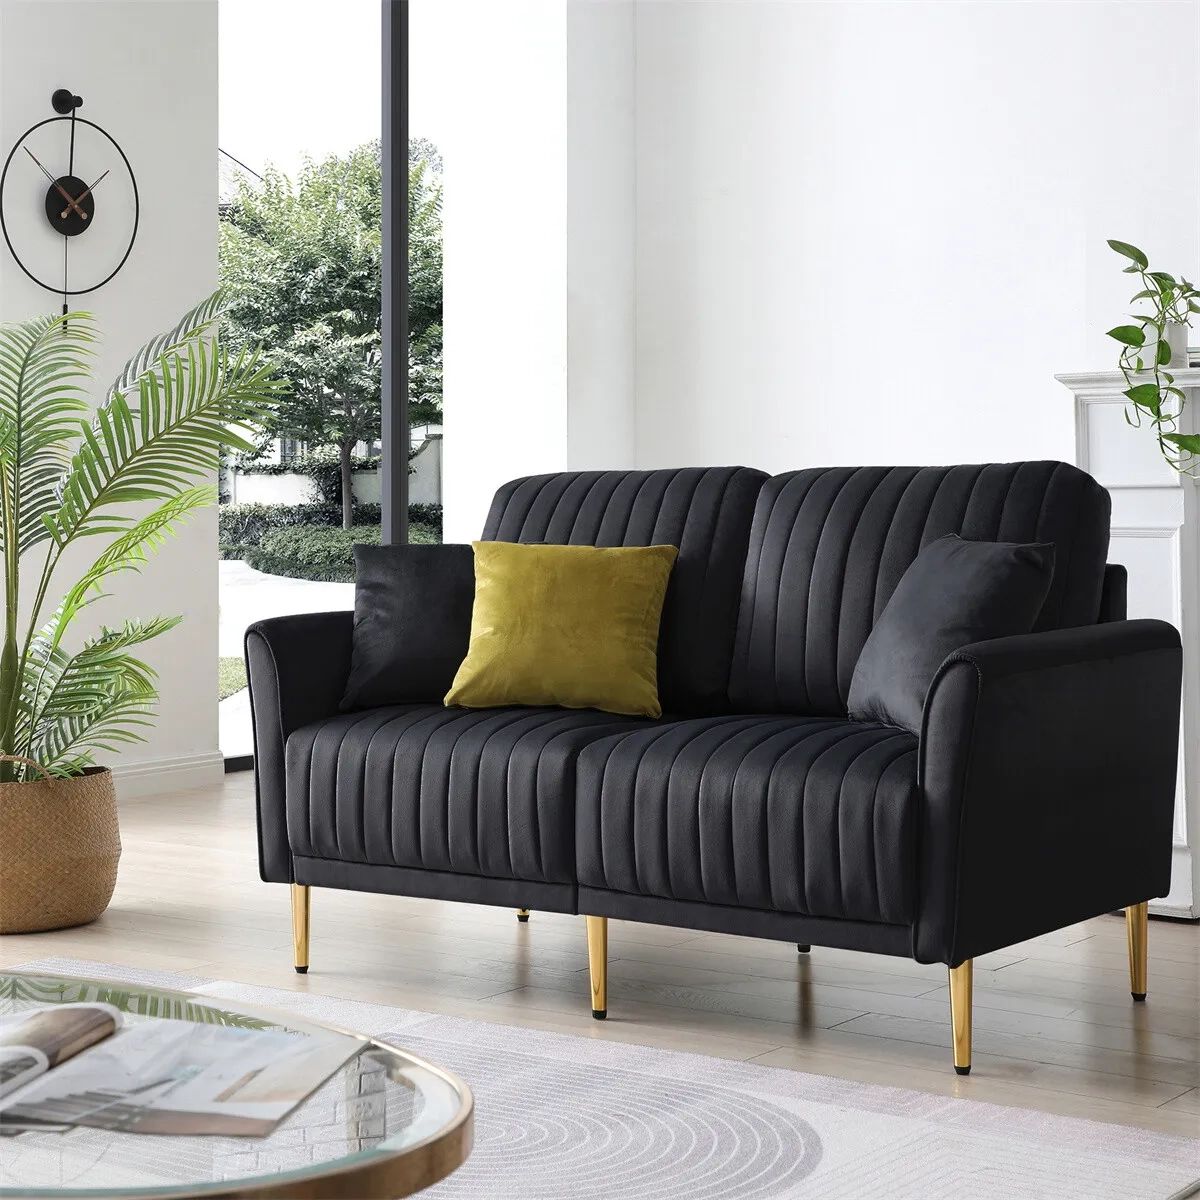 Modern Velvet 2 Seater Sofa Chanel Tufted Loveseat For Living Room Office  Black | Ebay In Black Velvet 2 Seater Sofa Beds (Photo 4 of 15)